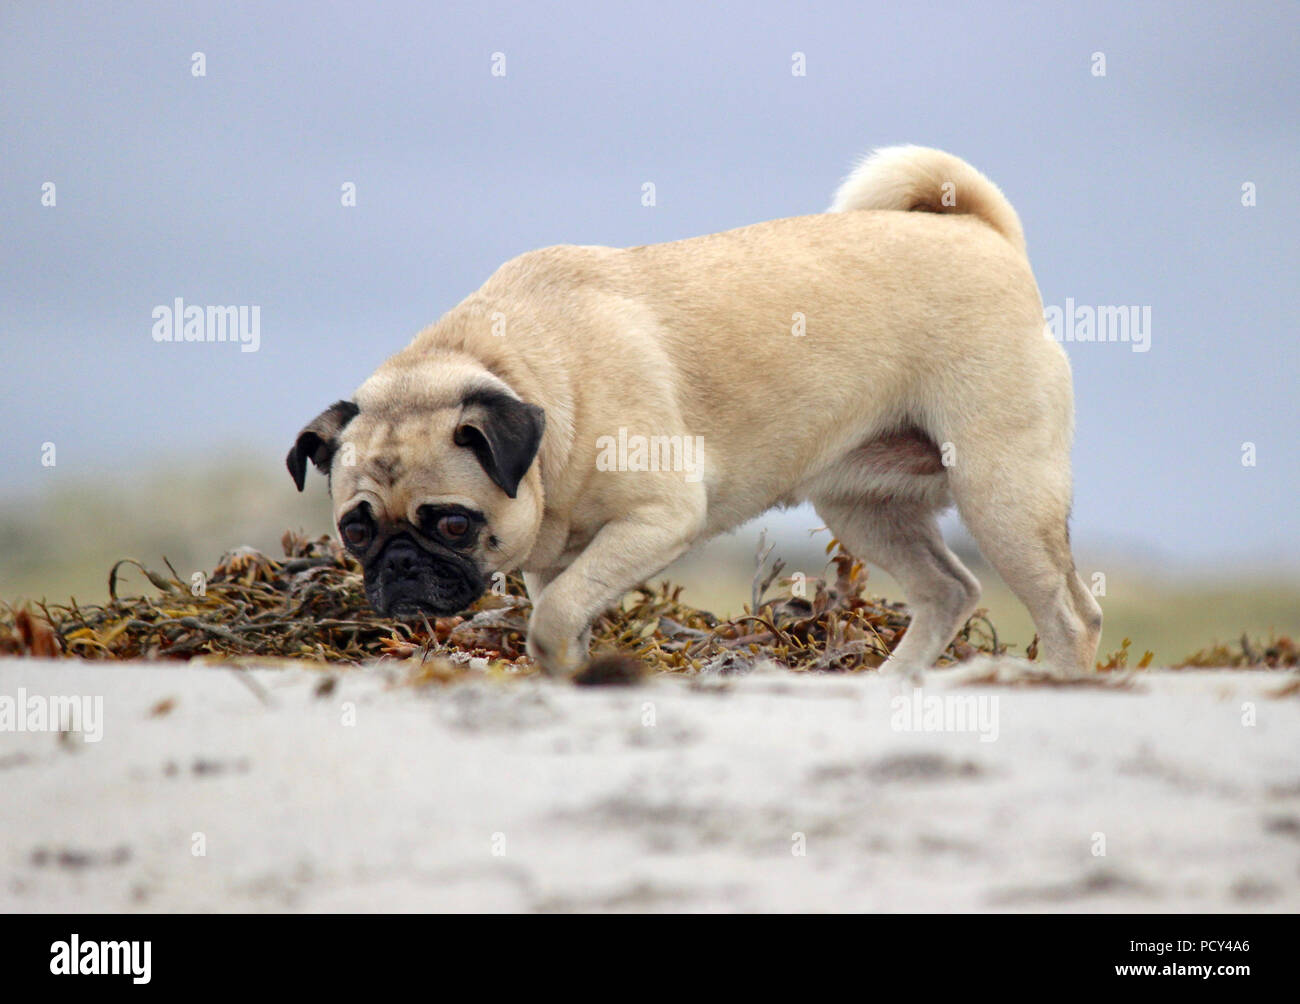 Un chien pug bénéficiant d'exécutant sans laisse et renifle autour sur une journée à la plage. Banque D'Images